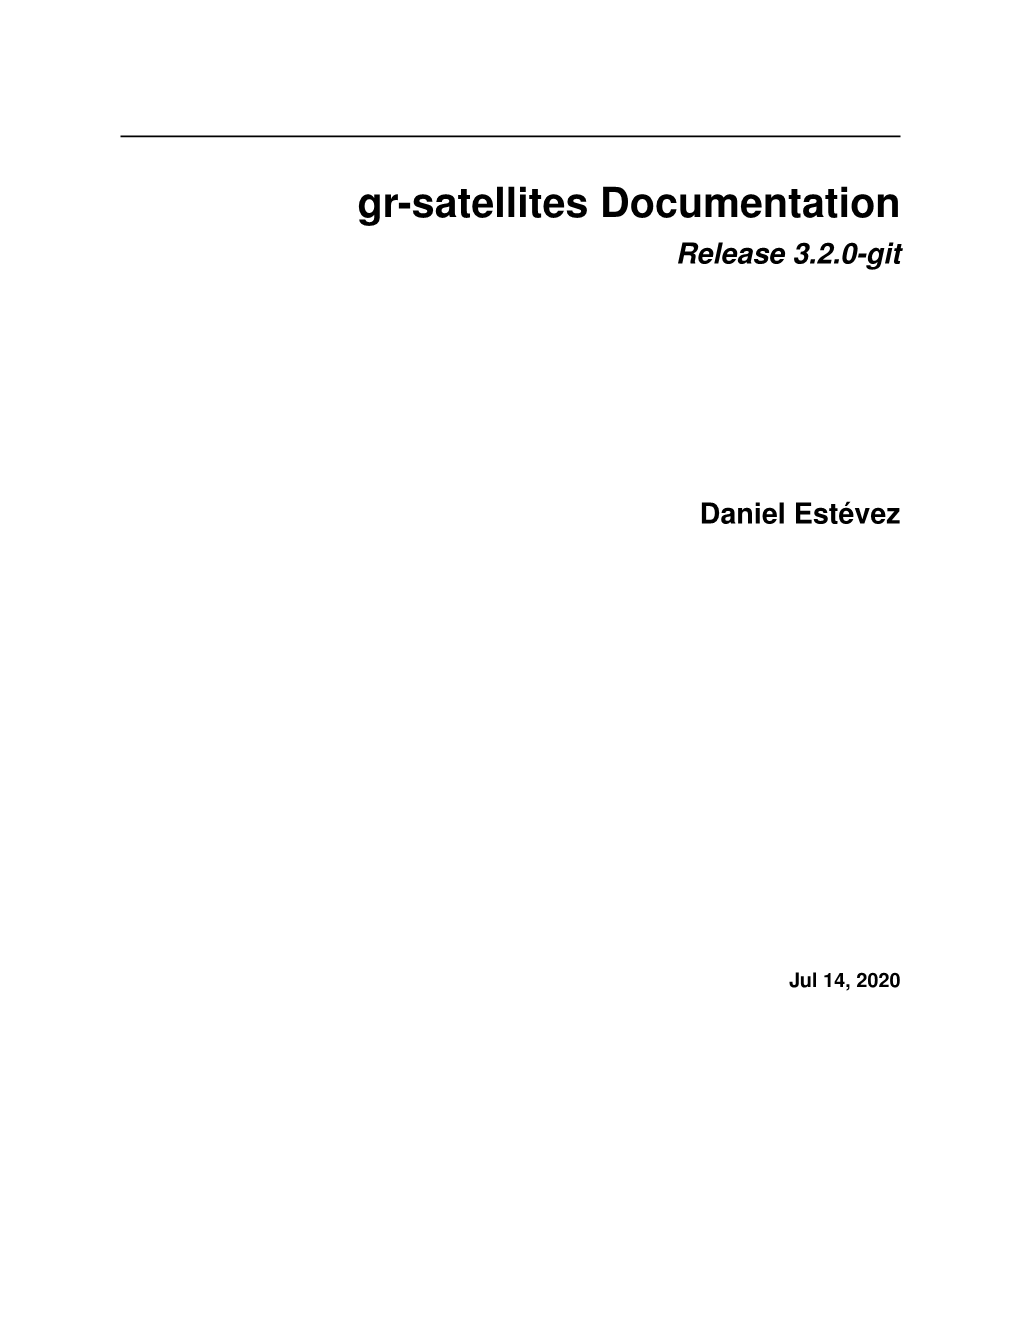 Gr-Satellites Documentation Release 3.2.0-Git